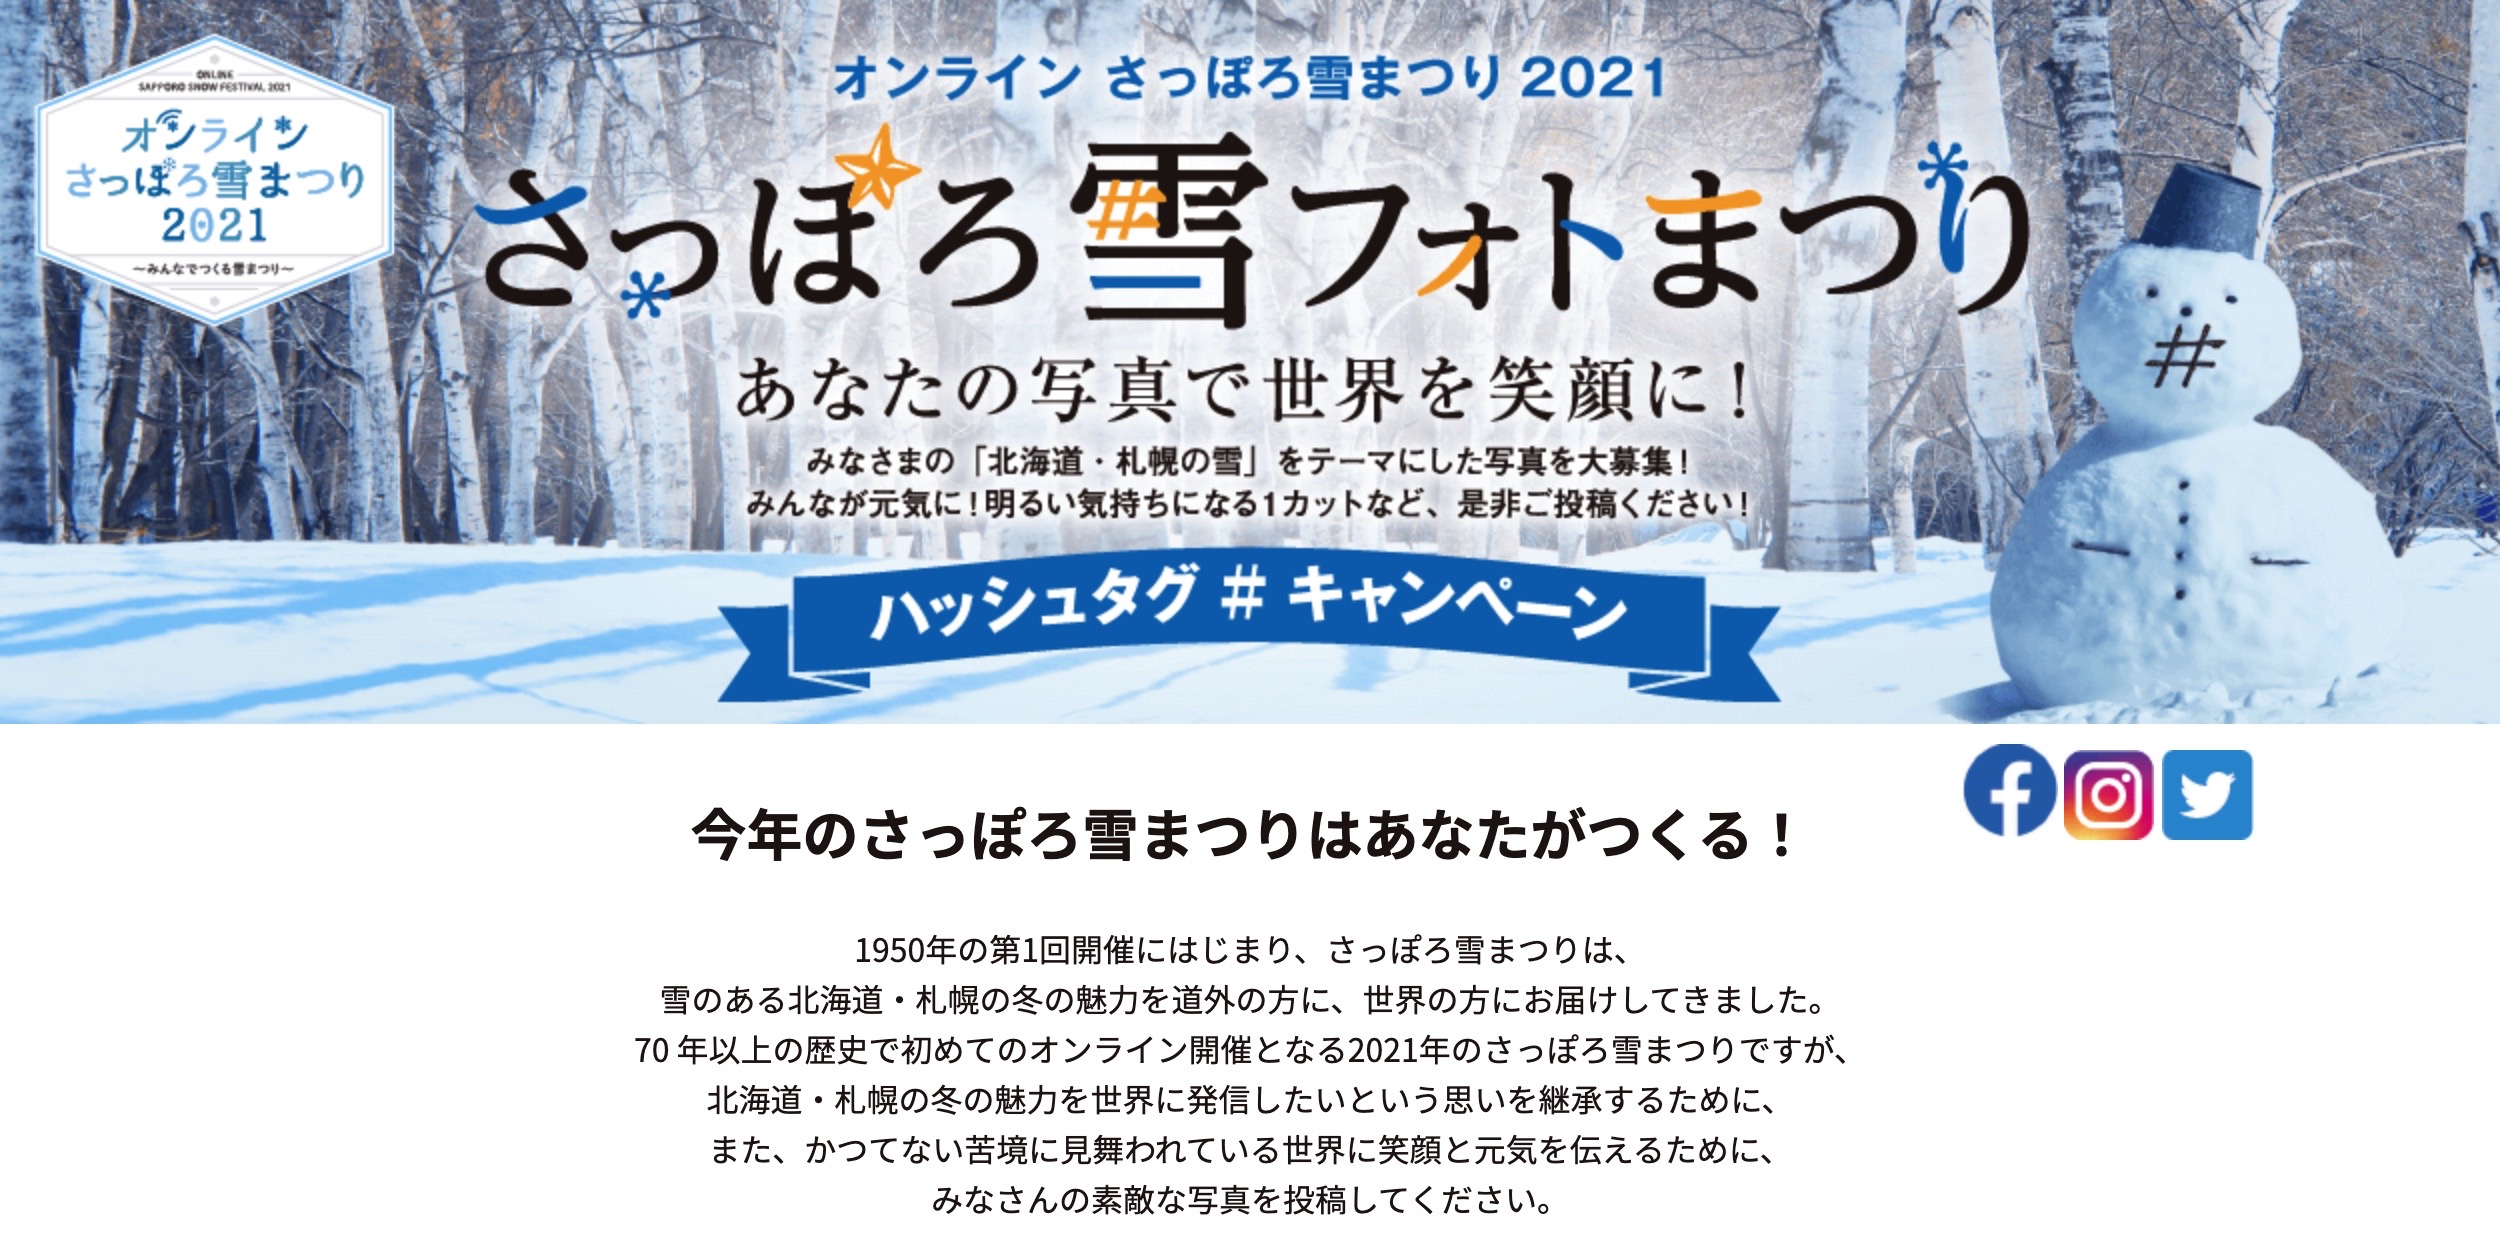 札幌 雪 まつり 2021